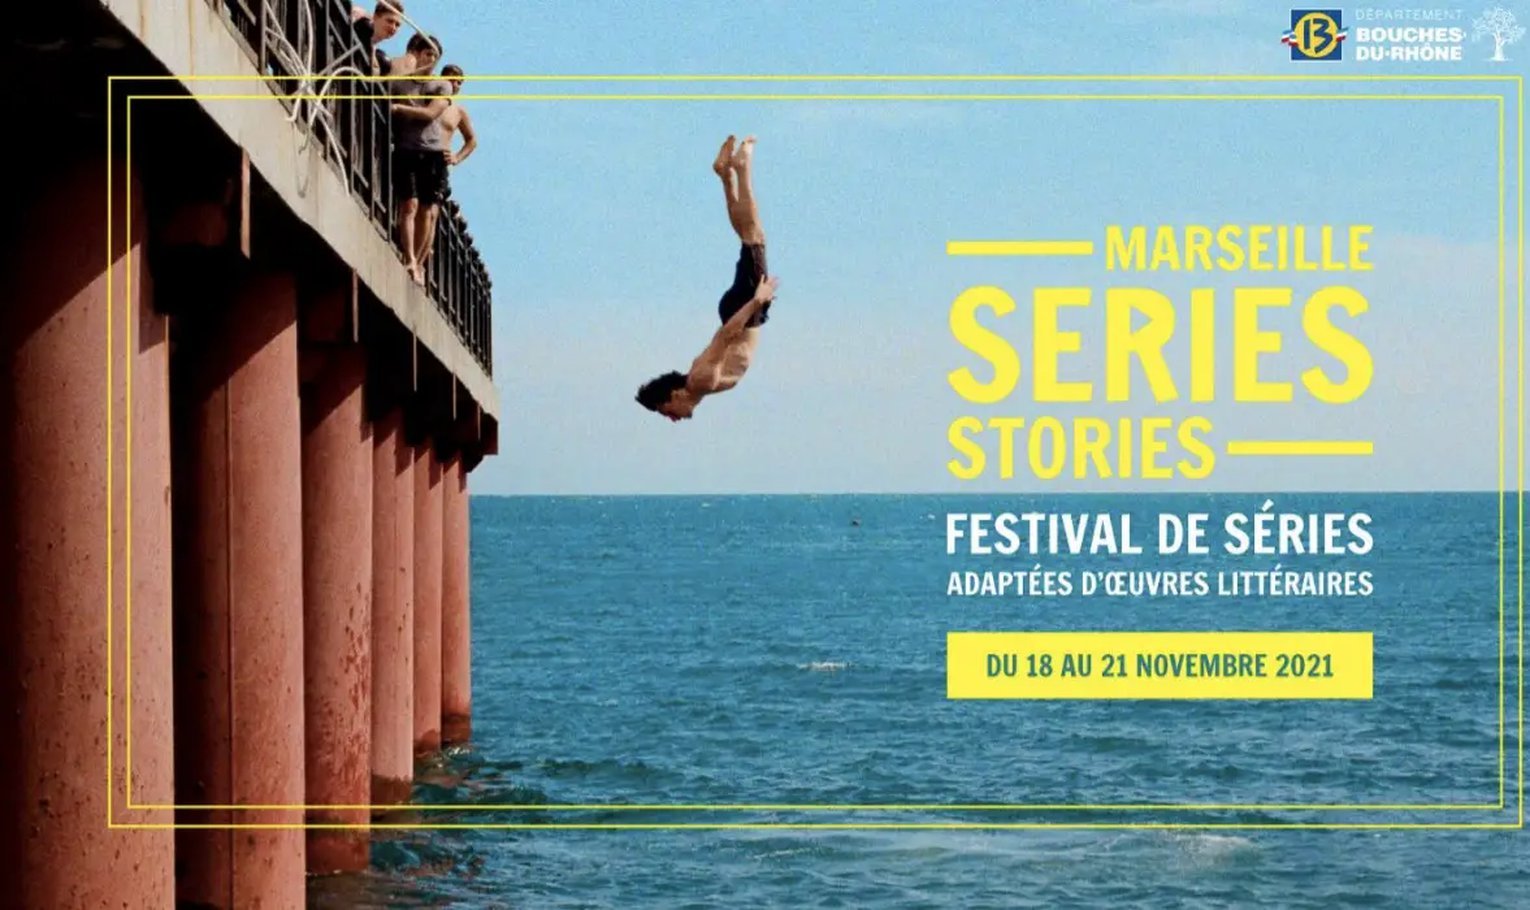 Le palmarès du festival Marseille Series Stories